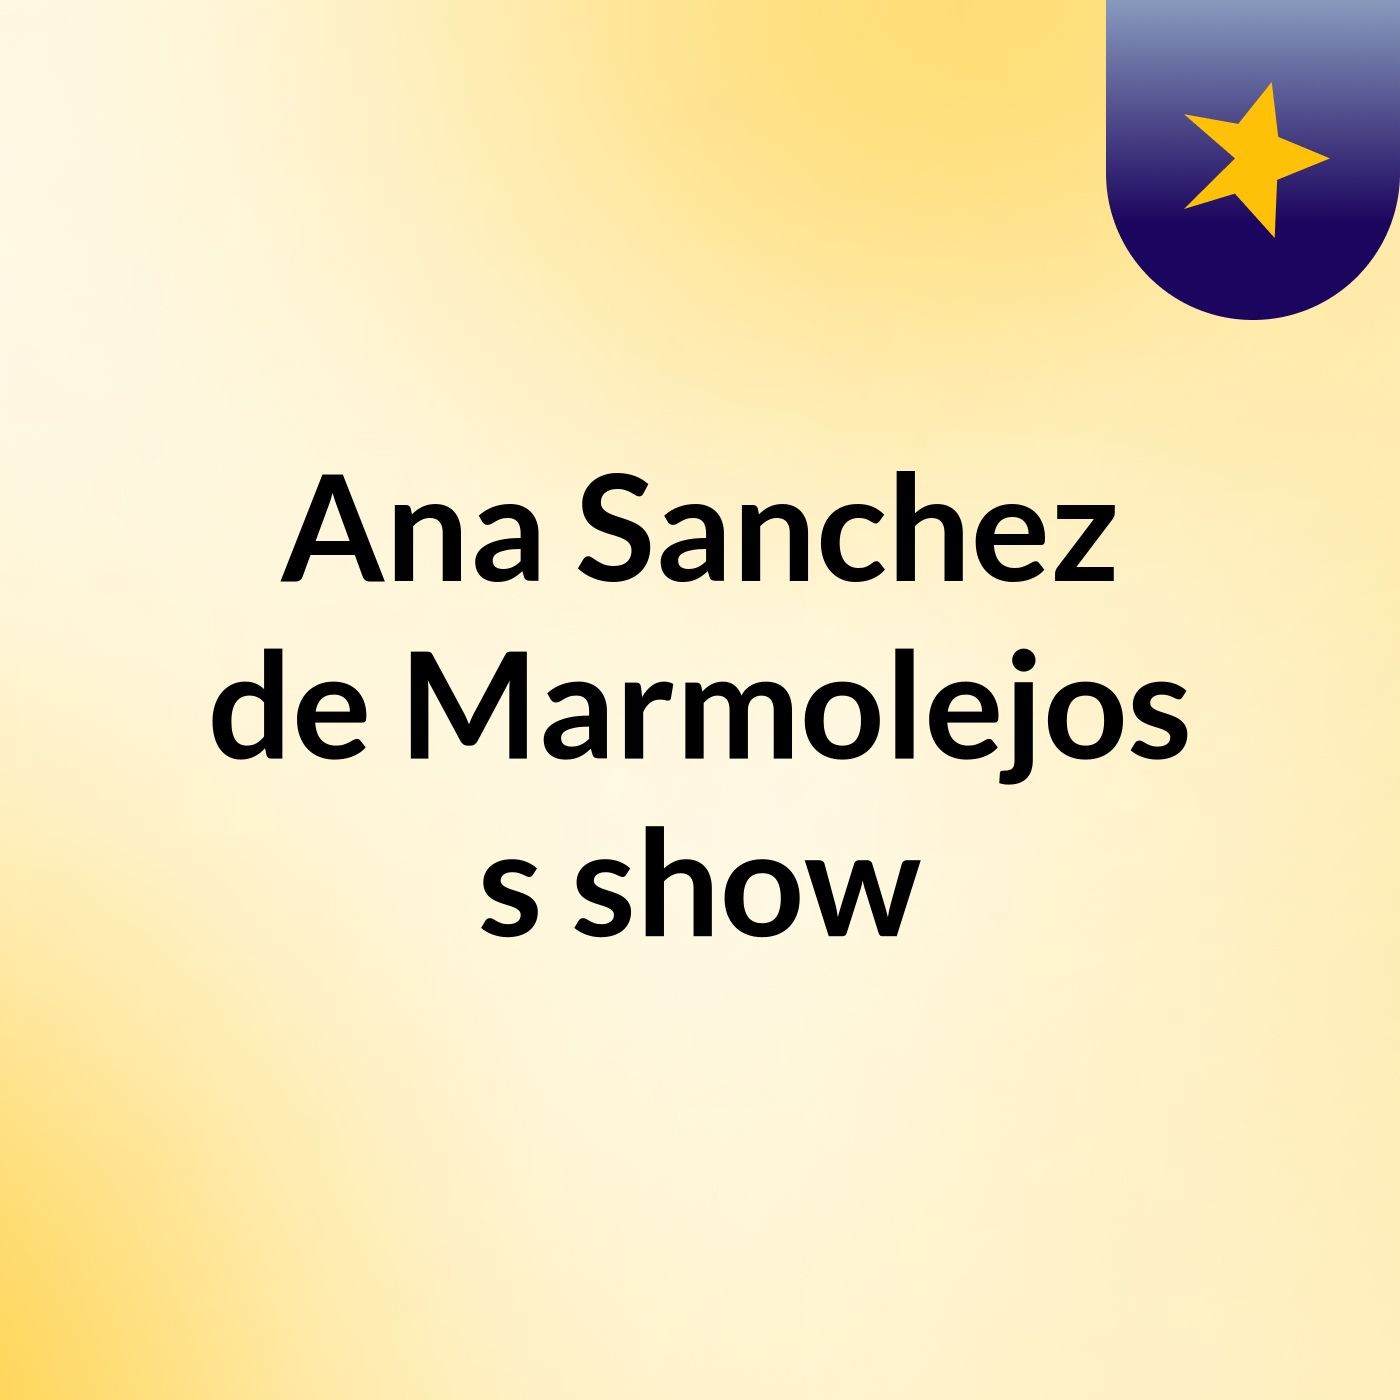 Traslado De Micrófono (Ana Sánchez)